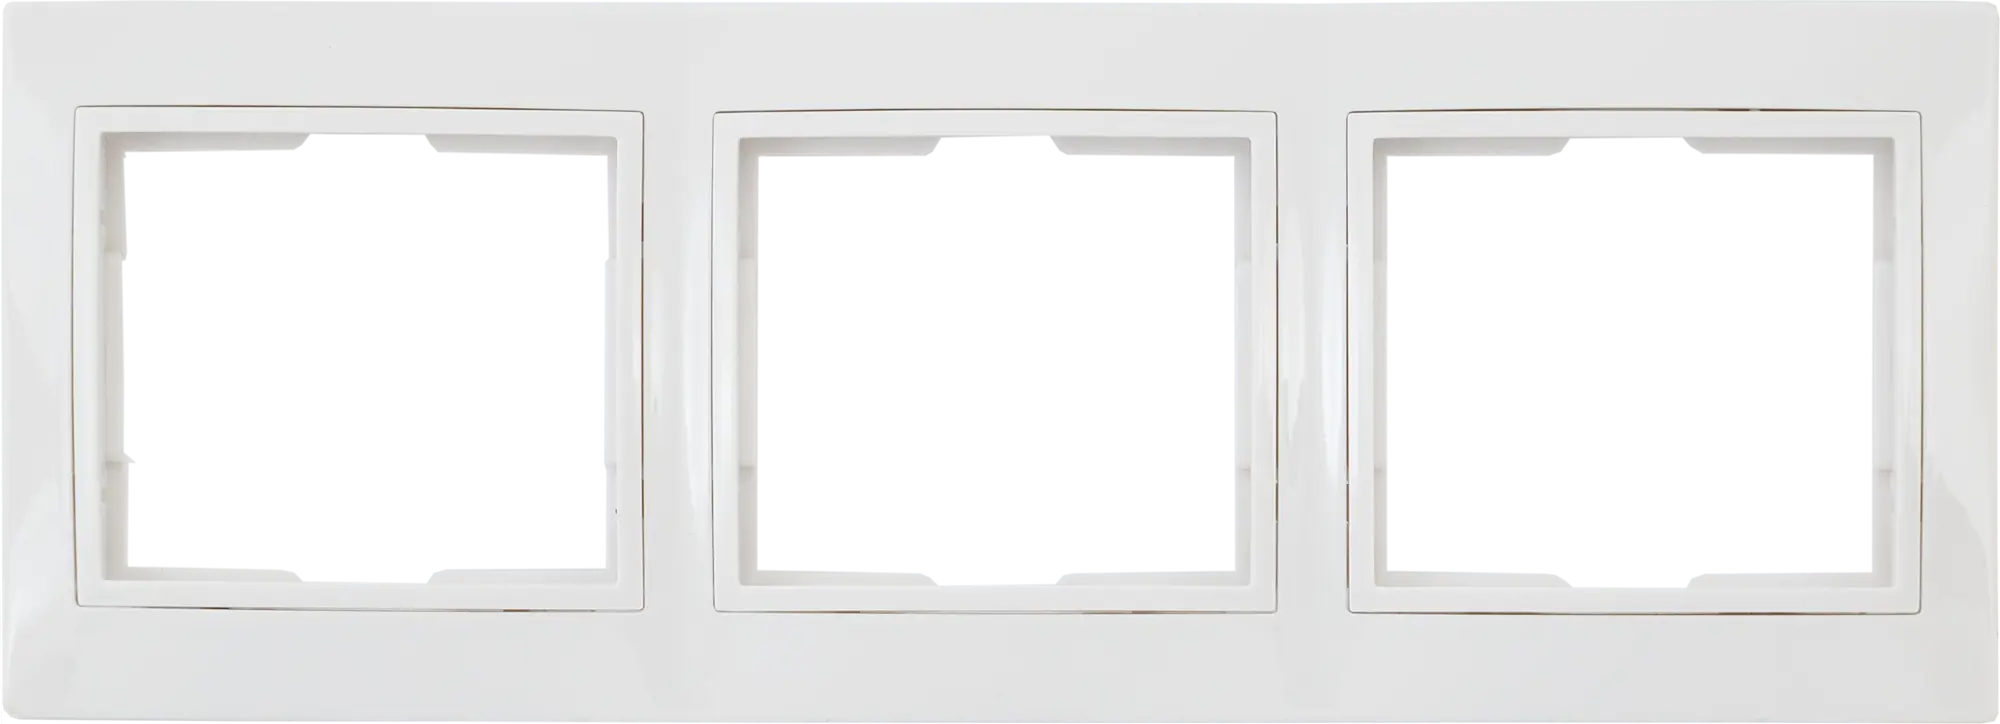 Рамка для розеток и выключателей горизонтальная Таймыр 3 поста, цвет белый трехместная горизонтальная рамка stekker